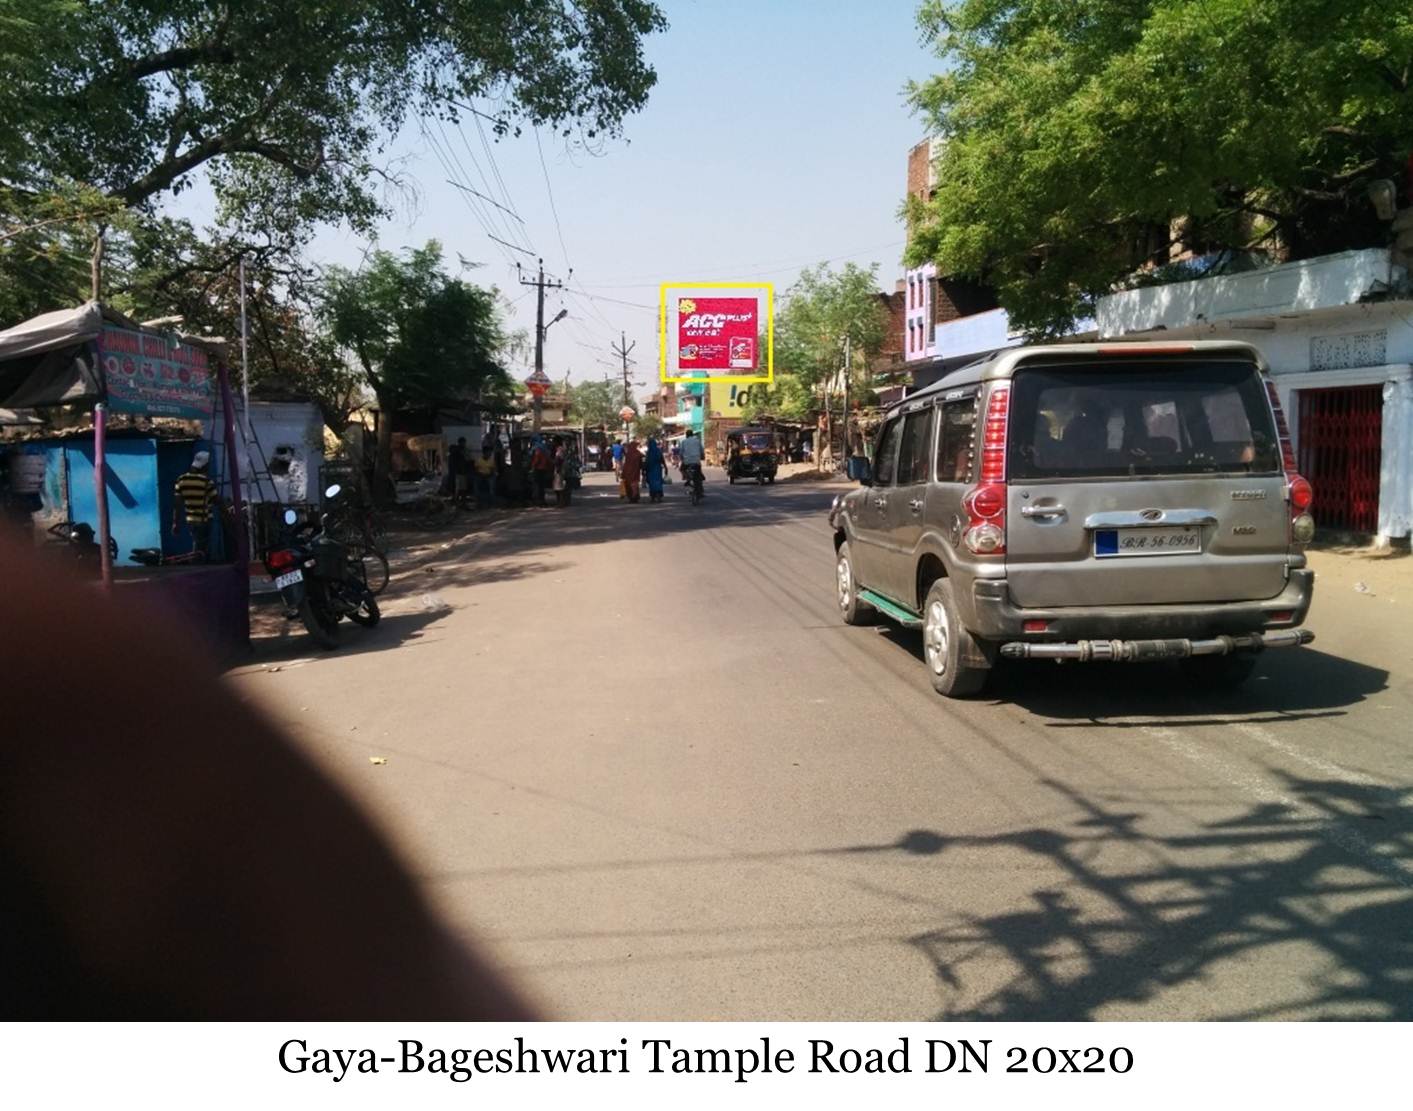 Bageshwari Temple Road DN, Gaya